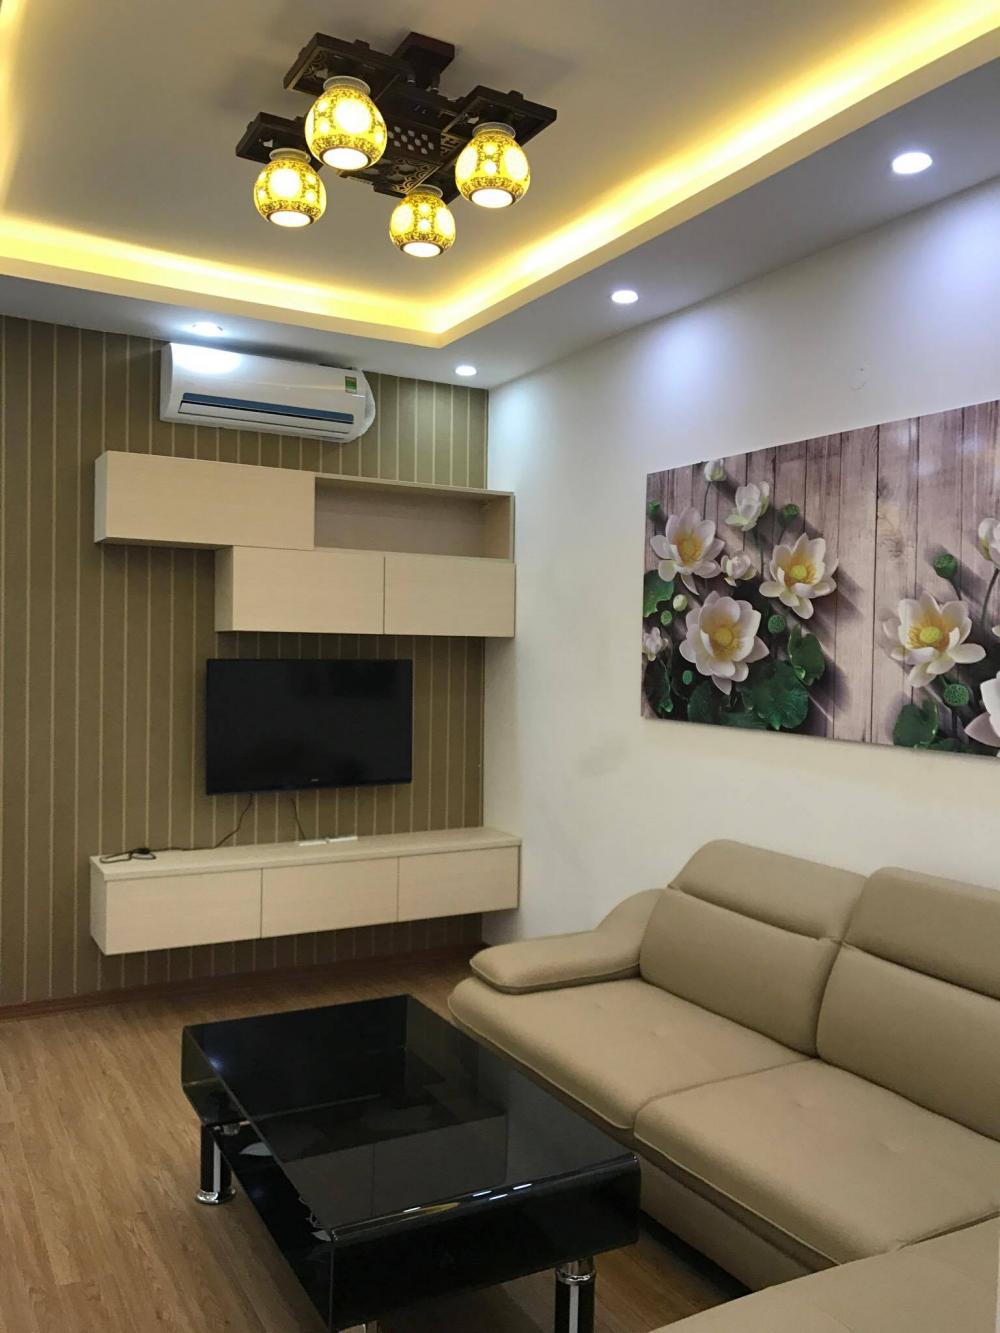 Cho thuê căn hộ chung cư cao cấp Mường Thanh giá chỉ từ 12tr/tháng LH: 01666564216 6968416